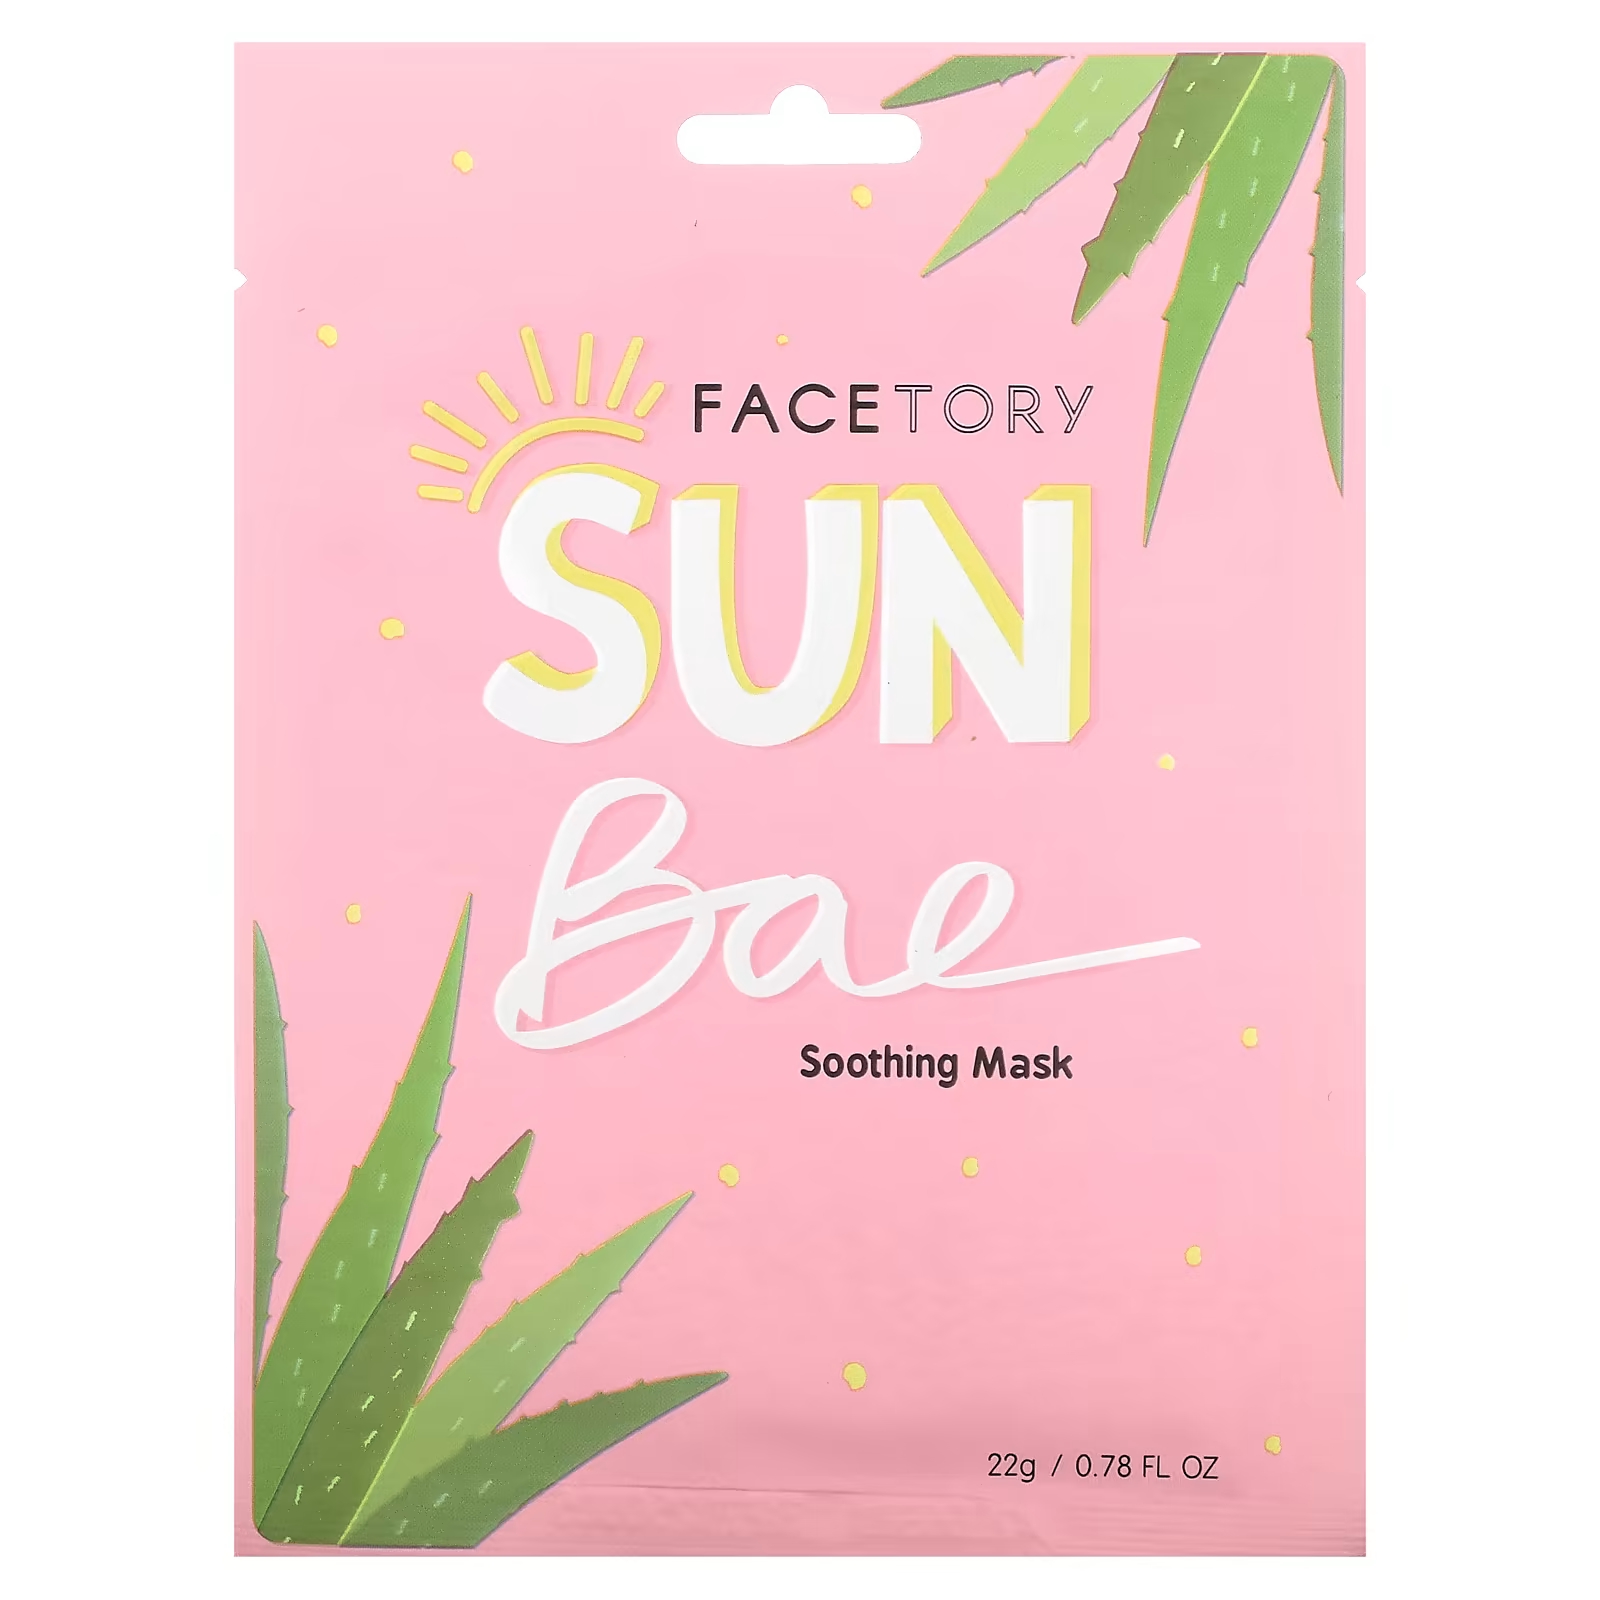 Успокаивающая косметическая маска FaceTory Sun Bae, 22 гр. успокаивающая косметическая маска facetory sun bae 22 гр